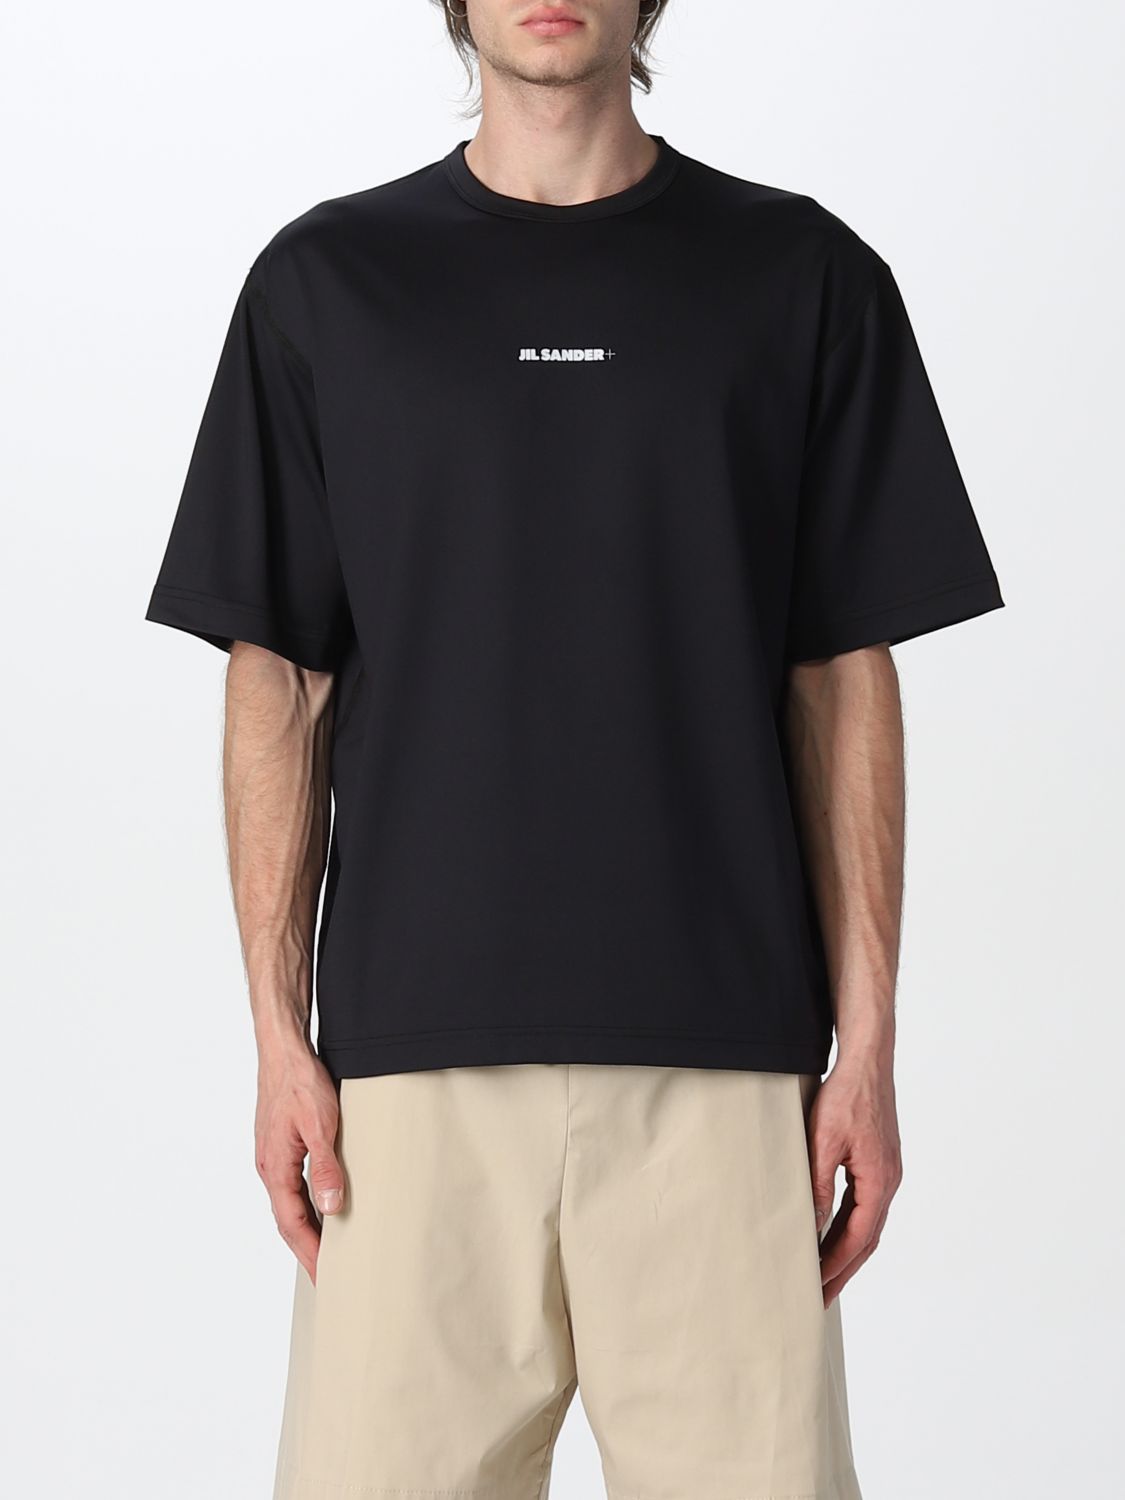 JIL SANDER: t-shirt with logo - Black | Jil Sander t-shirt ...